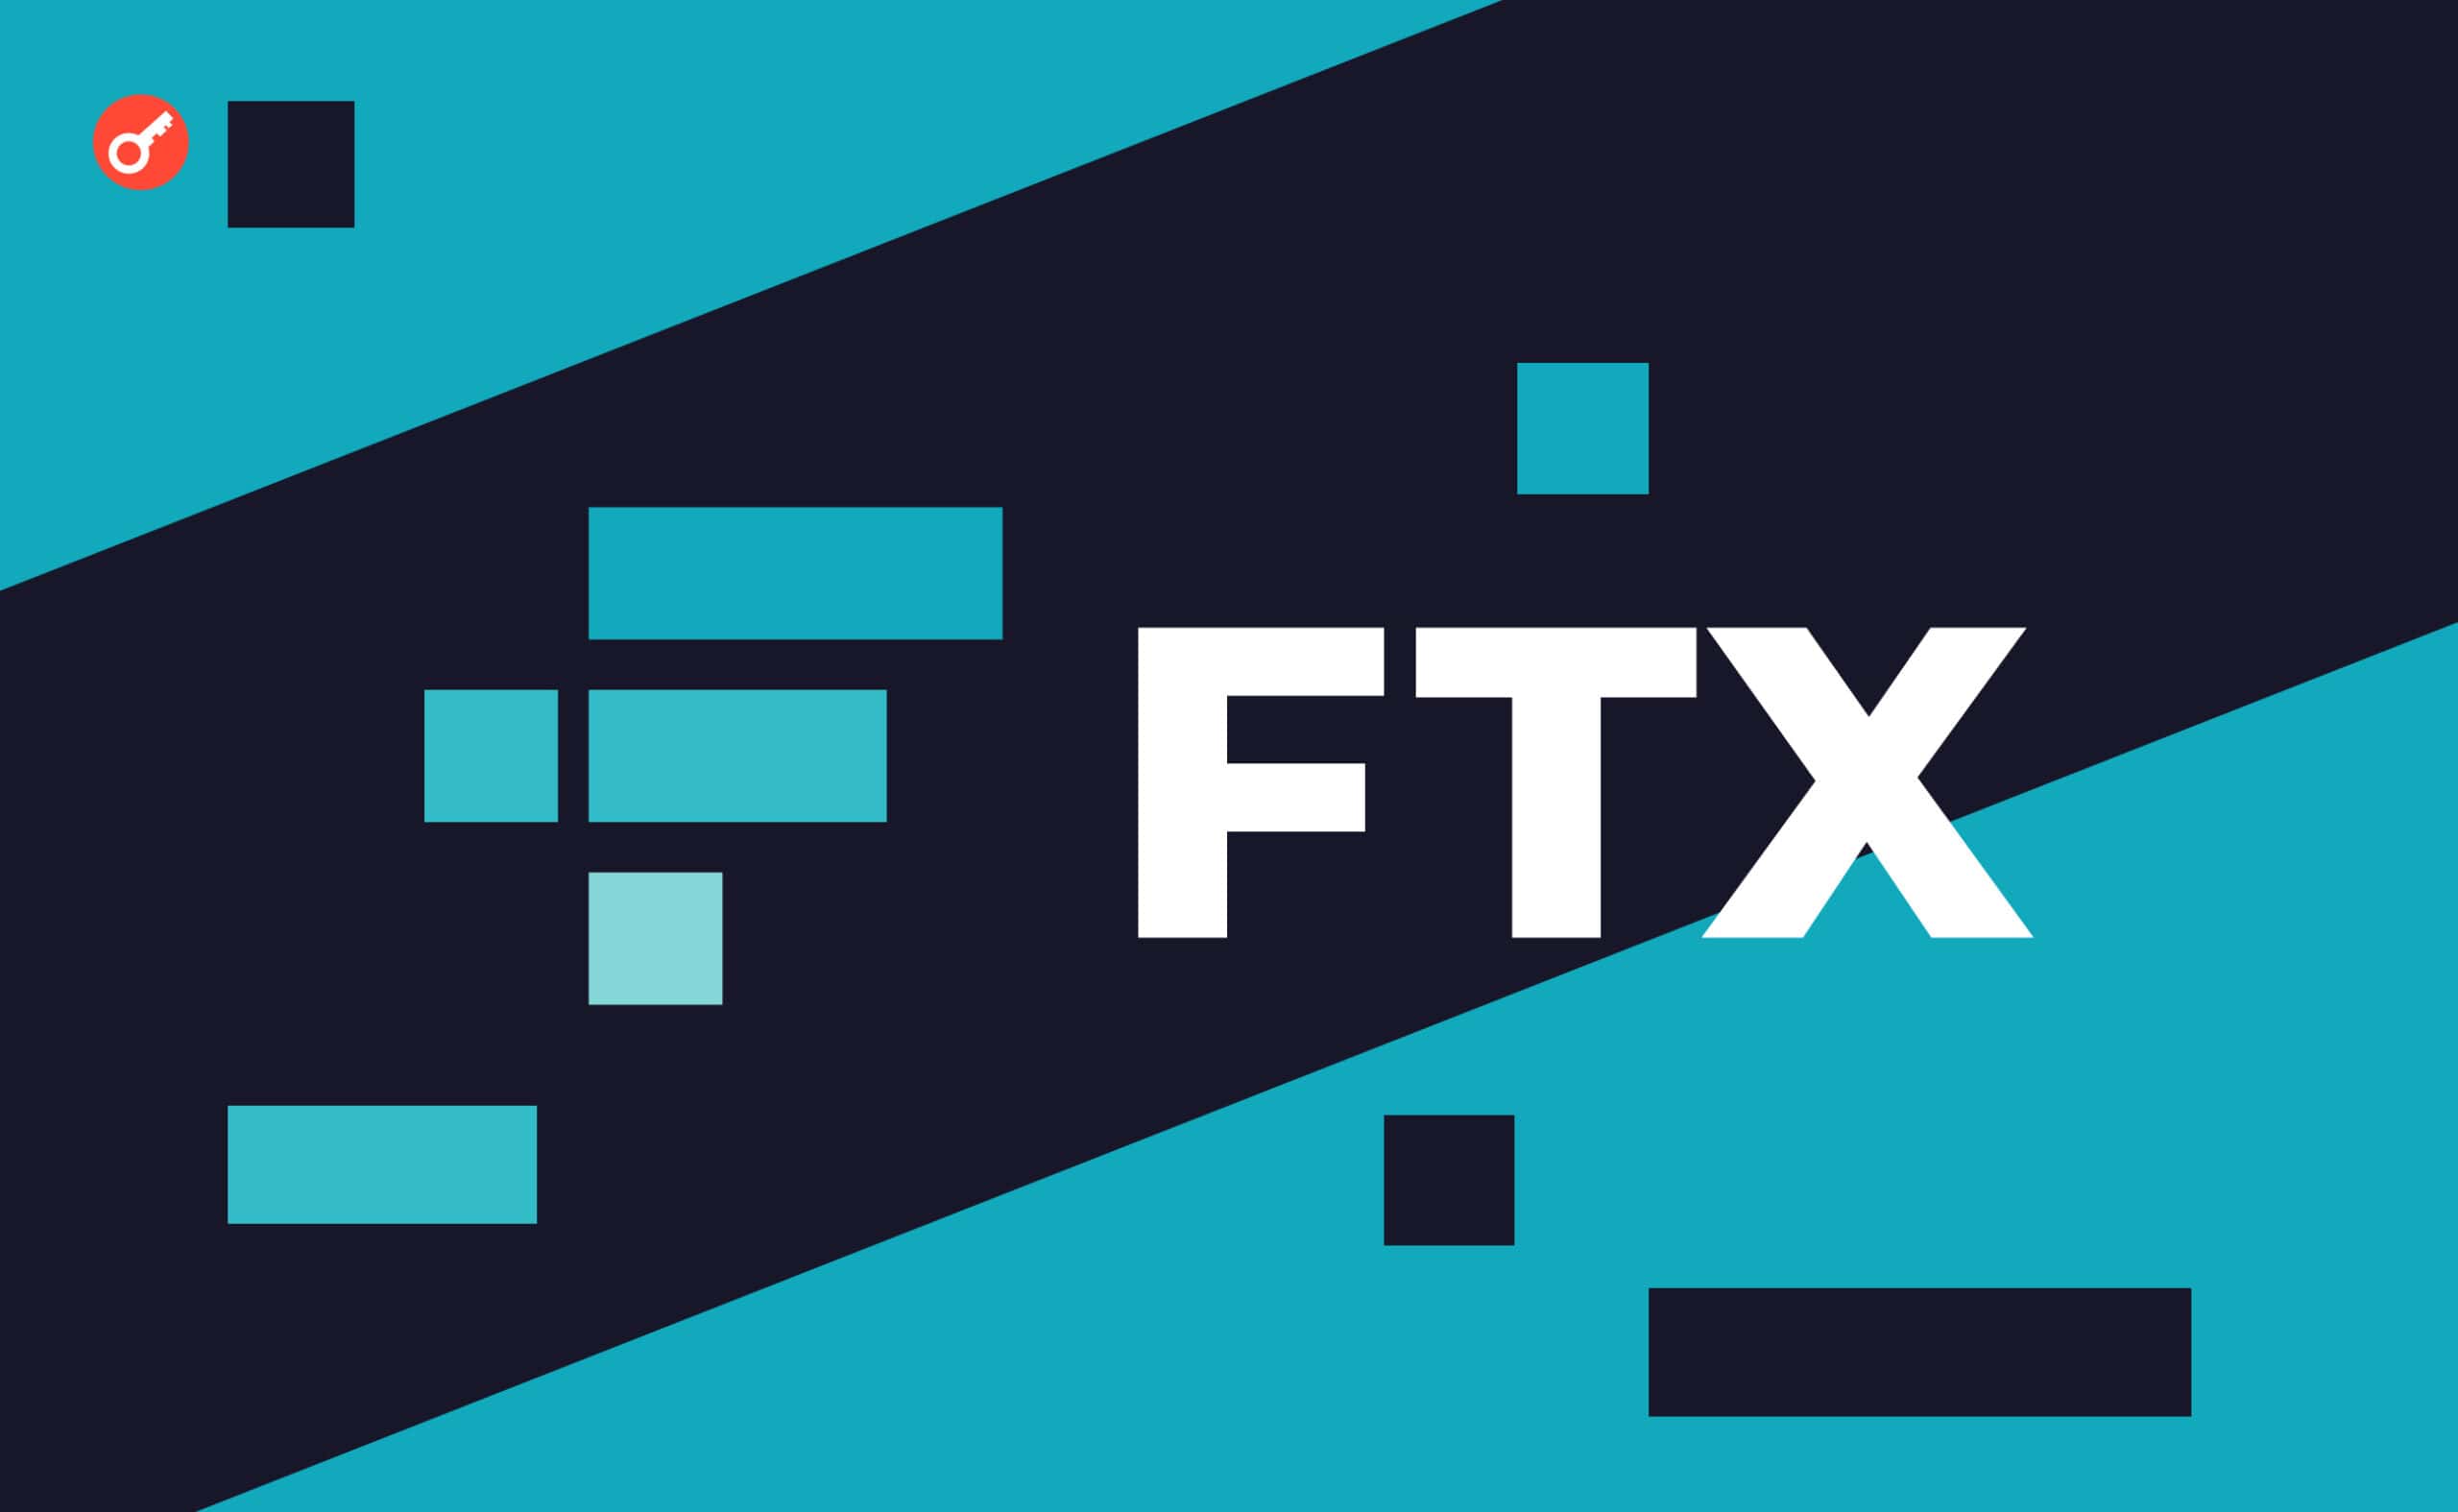 Цього тижня клієнти FTX отримали листи нібито від біржі. У них йдеться про те, що найближчим часом суд призначить крайній термін для подачі заявок на повернення коштів, після чого користувачам надішлють подальші інструкції.